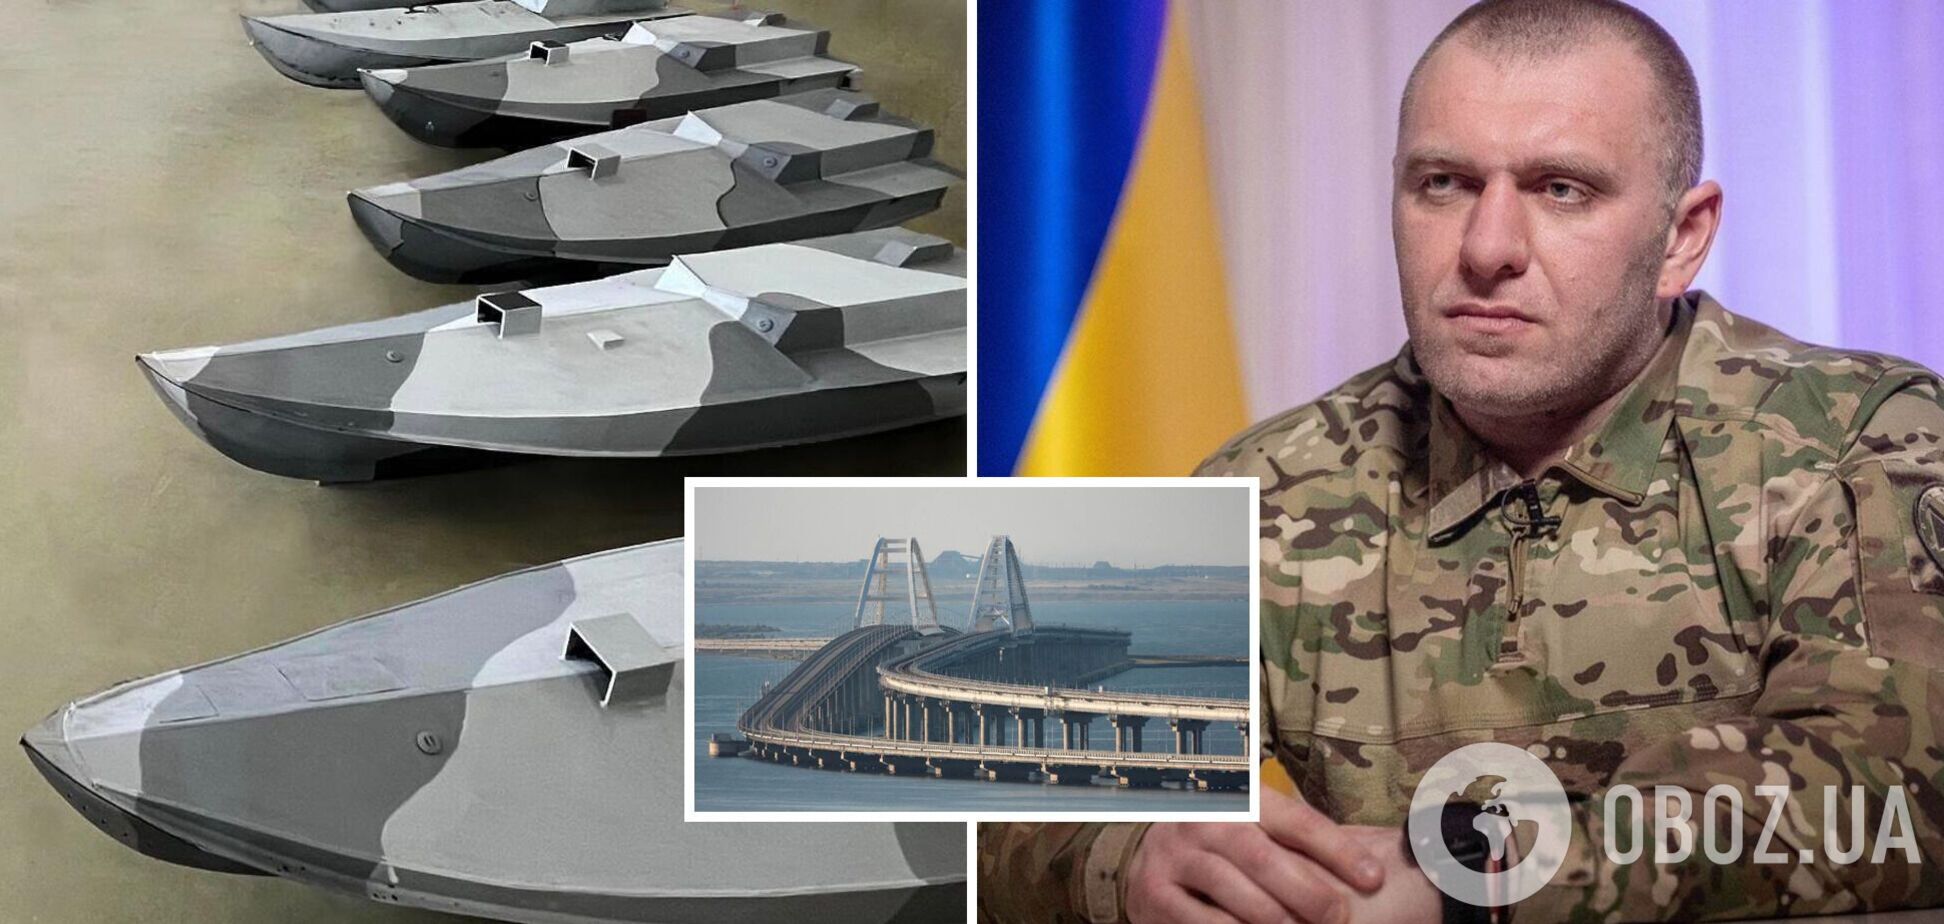 Производят под землей: как выглядят дроны 'Морской малыш', которыми СБУ атаковала Крымский мост. Фото и видео